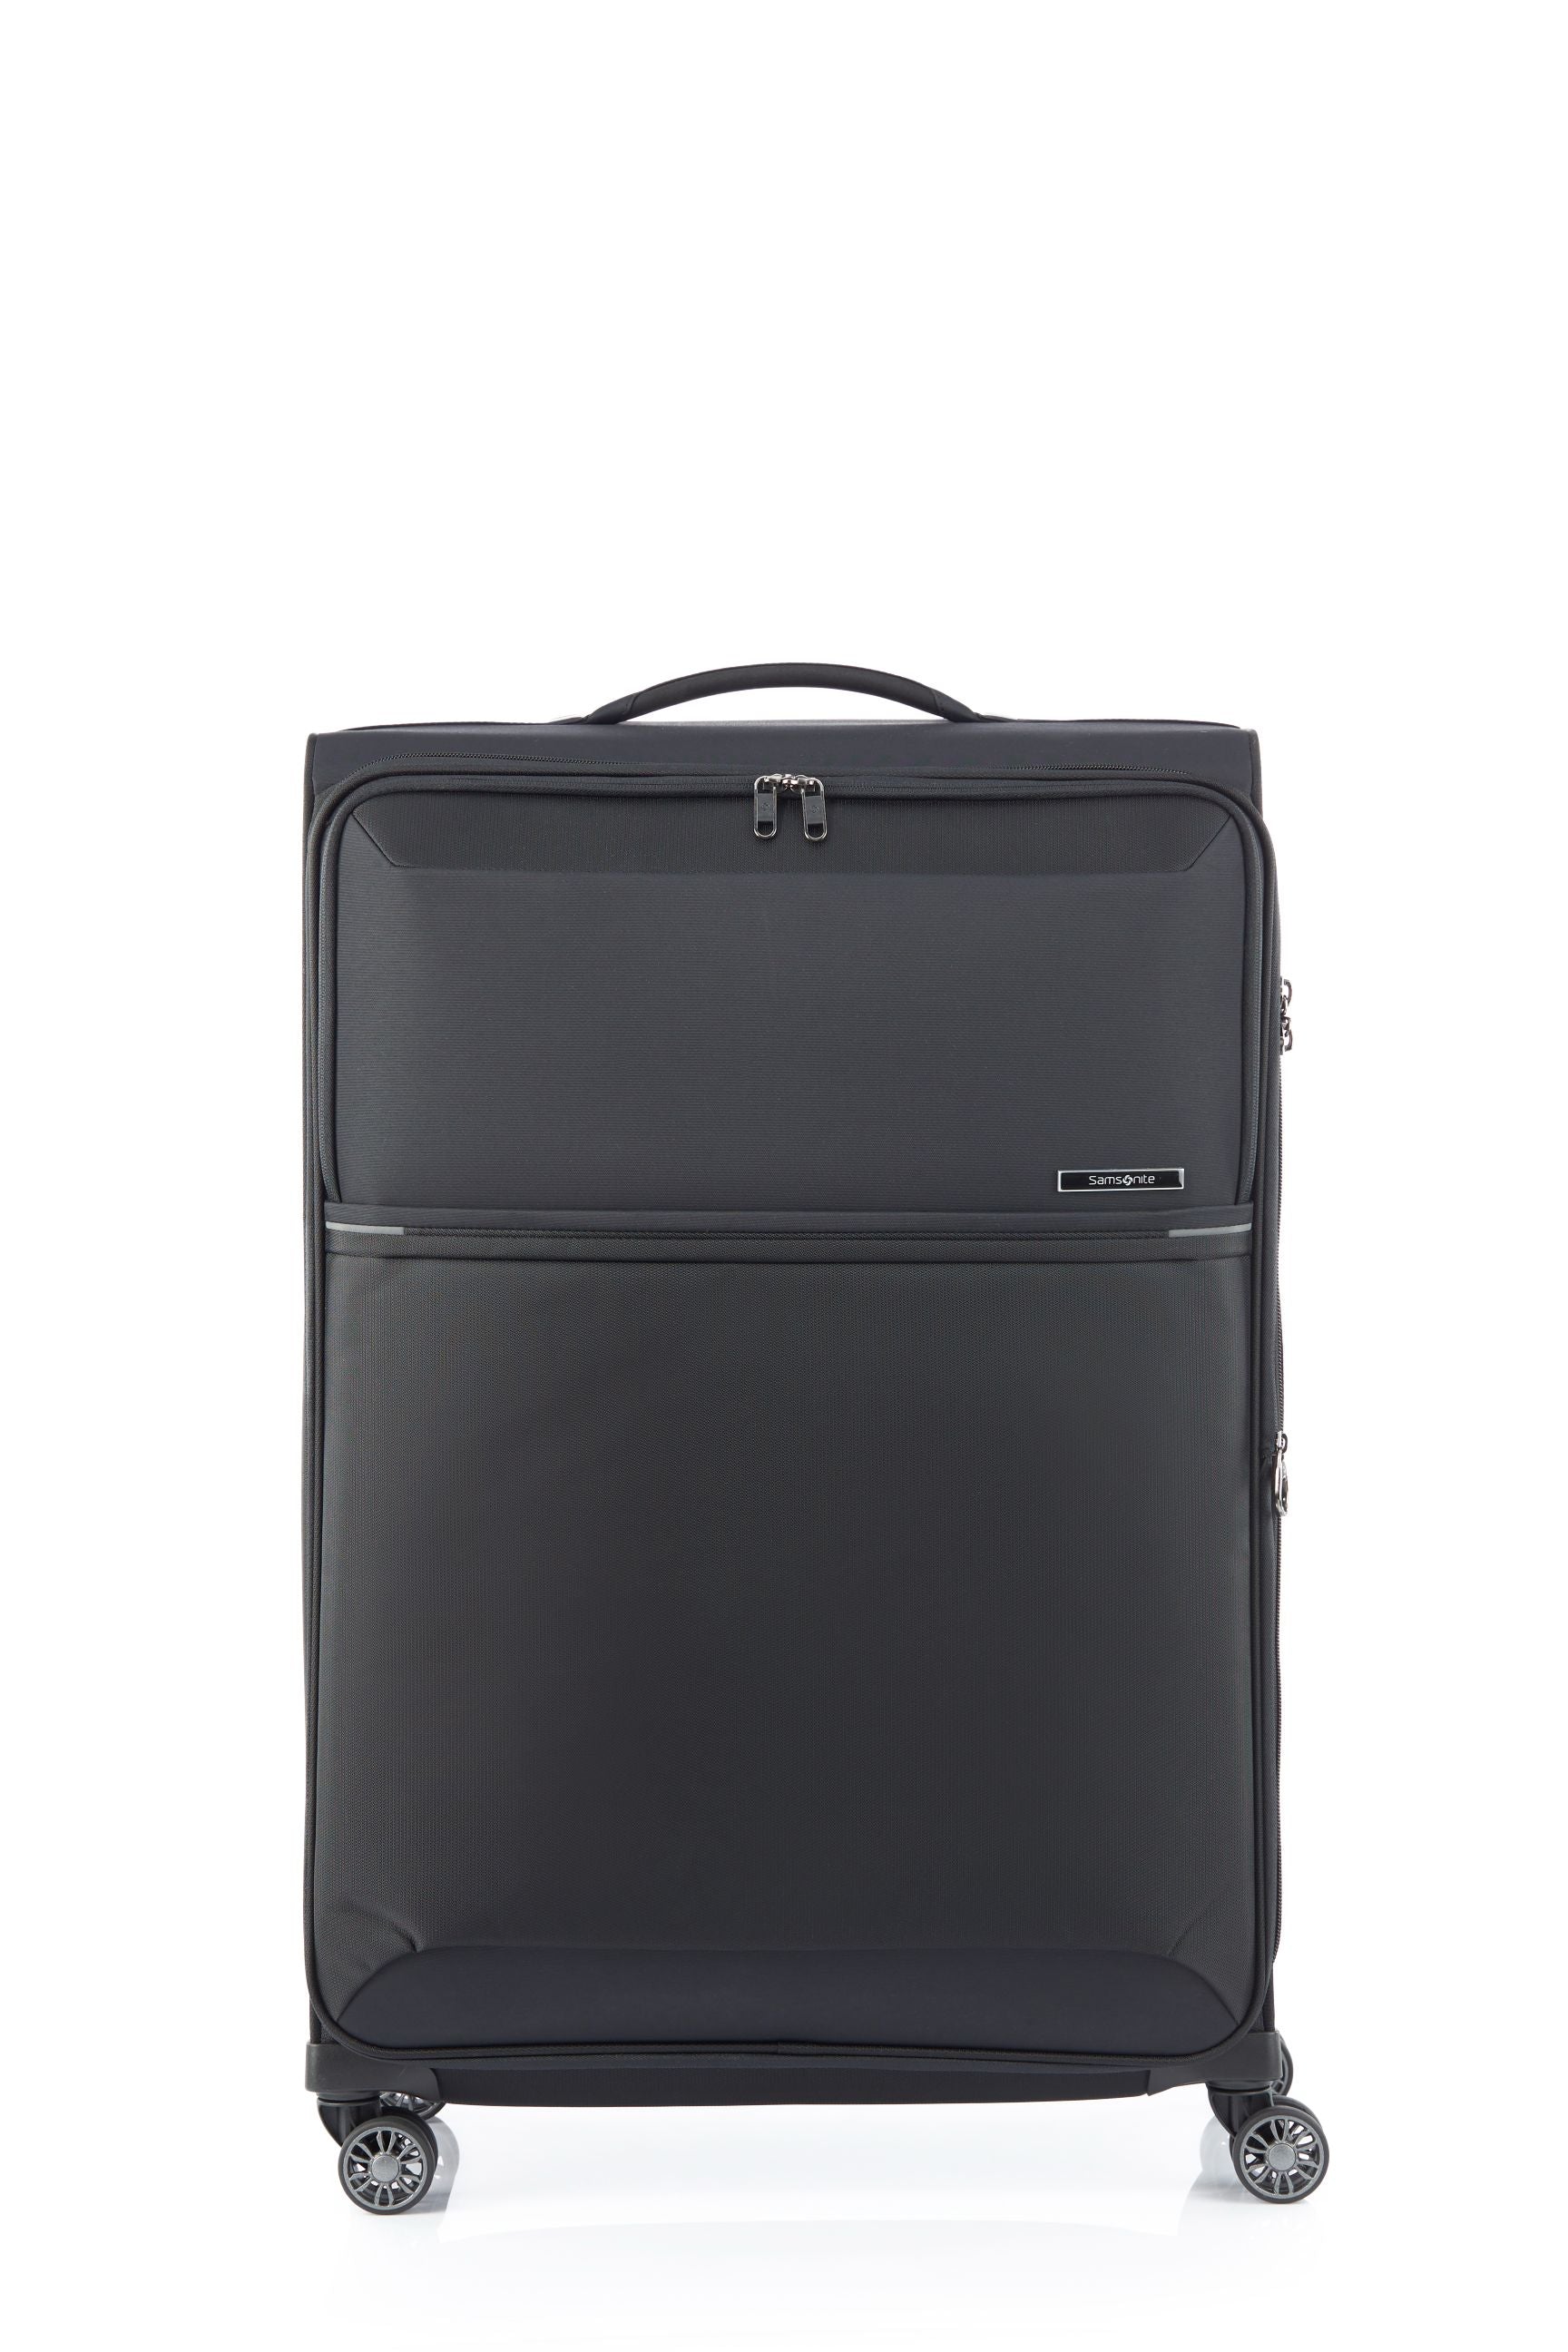 Samsonite - 73HR 78cm Large Suitcase - Black - 0